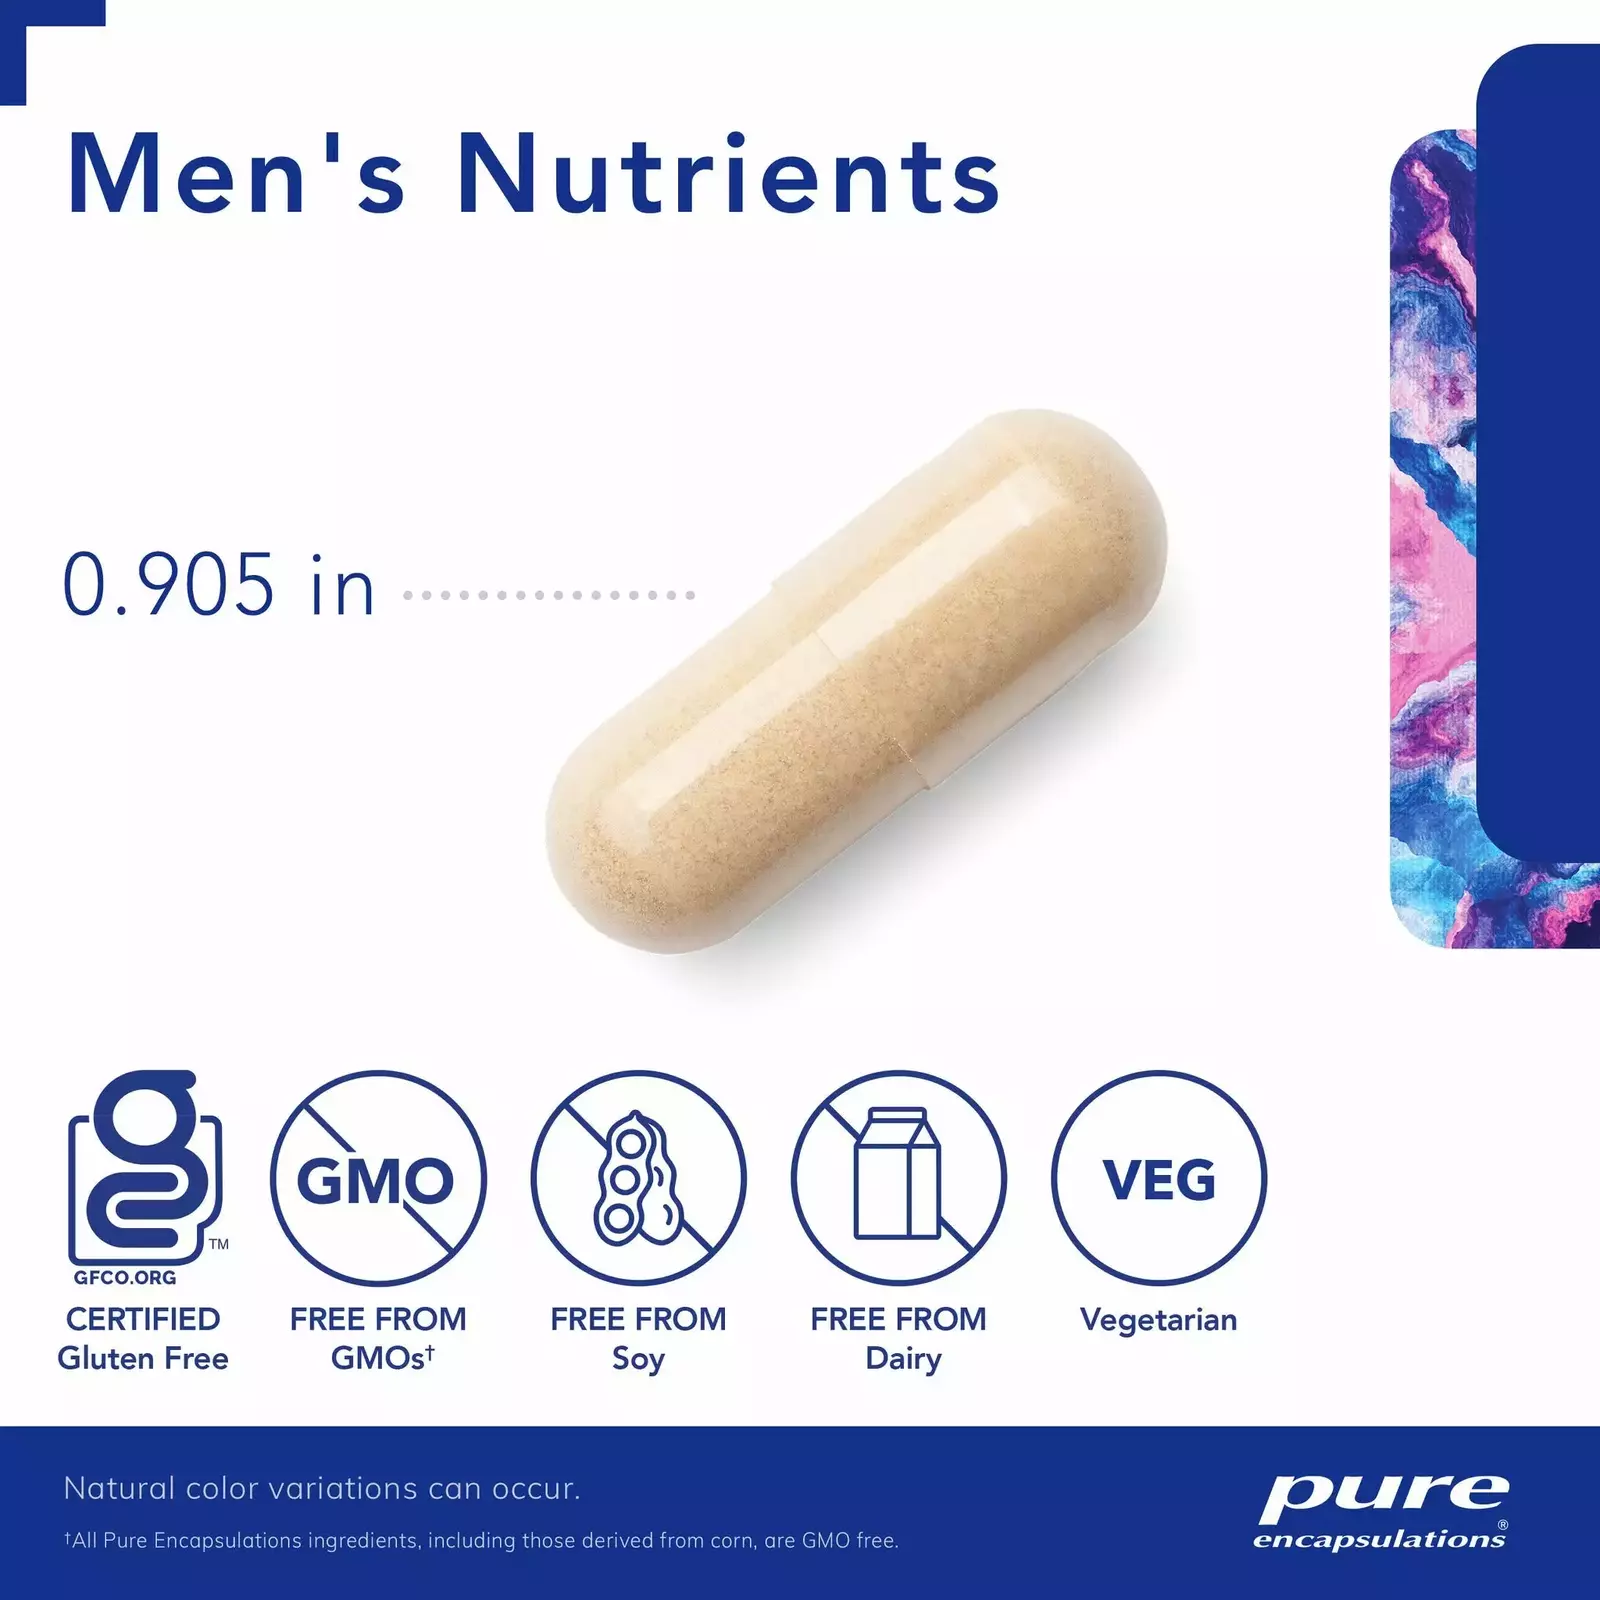 Men's Nutrients #180